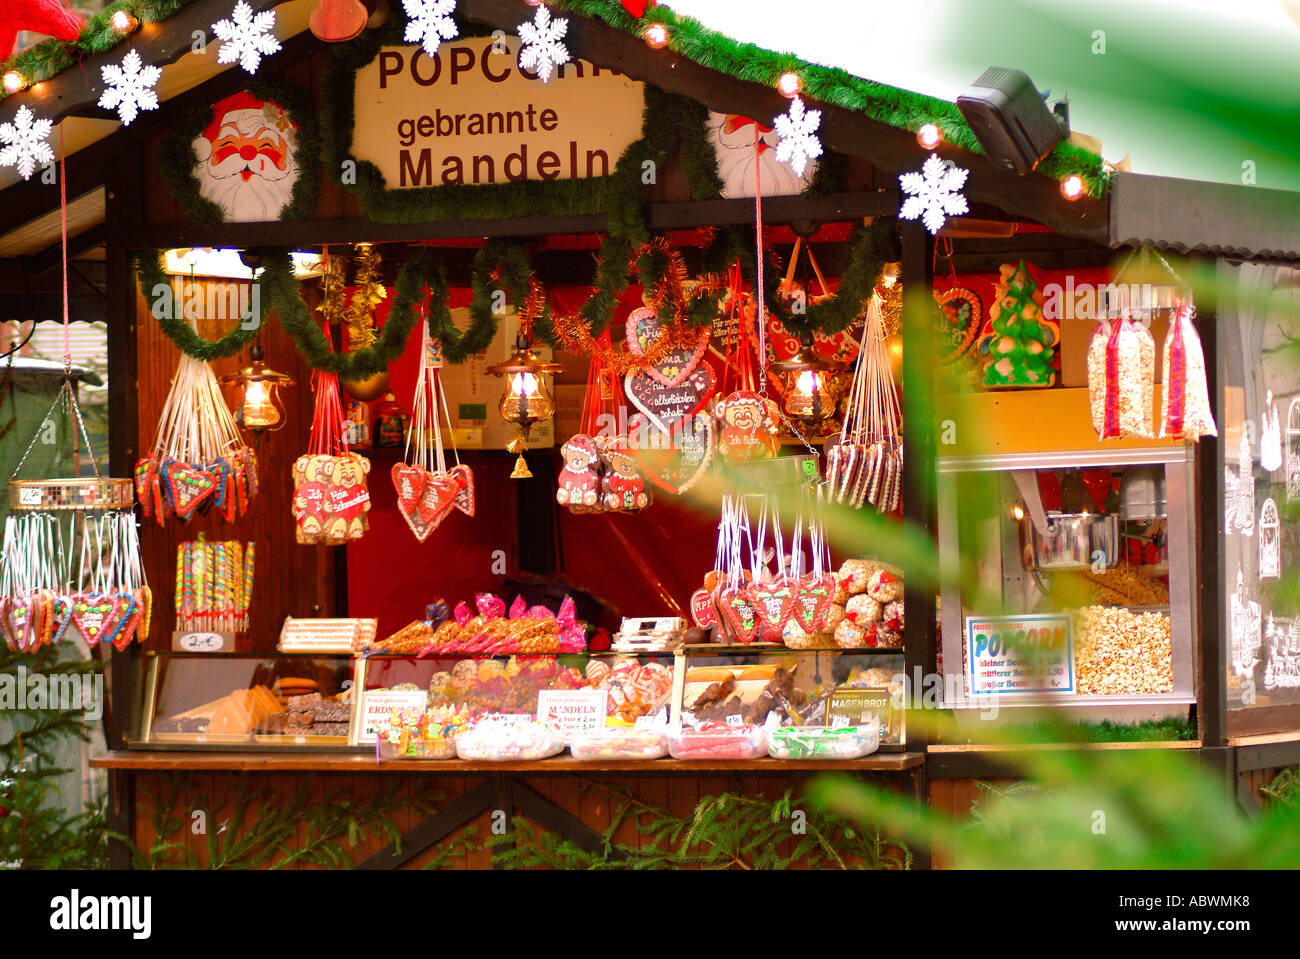 Cuori di panpepato e mandorle su un mercato prima di natale Lebkuchenherzen und Mandeln Weihnachtsmarkt Foto Stock